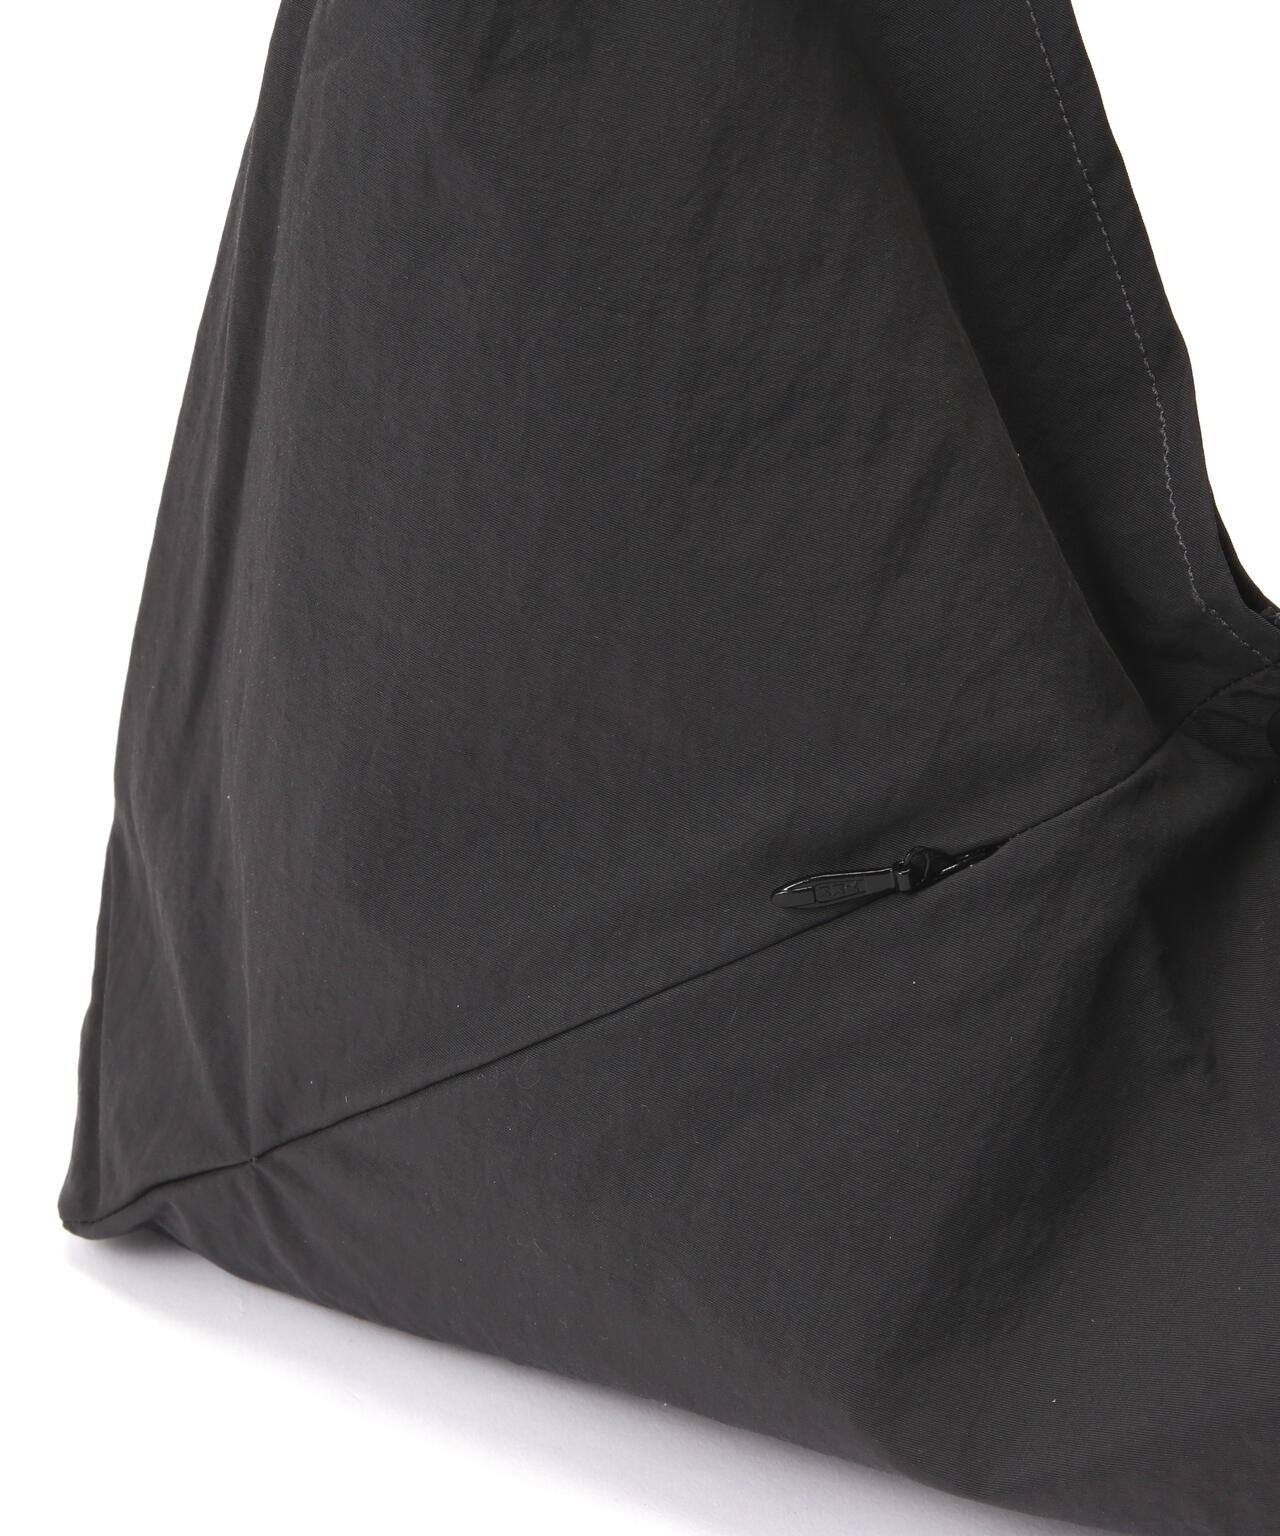 SLOW(スロウ)span nylon-wrap bag S- 586S112K | B'2nd ( ビーセカンド